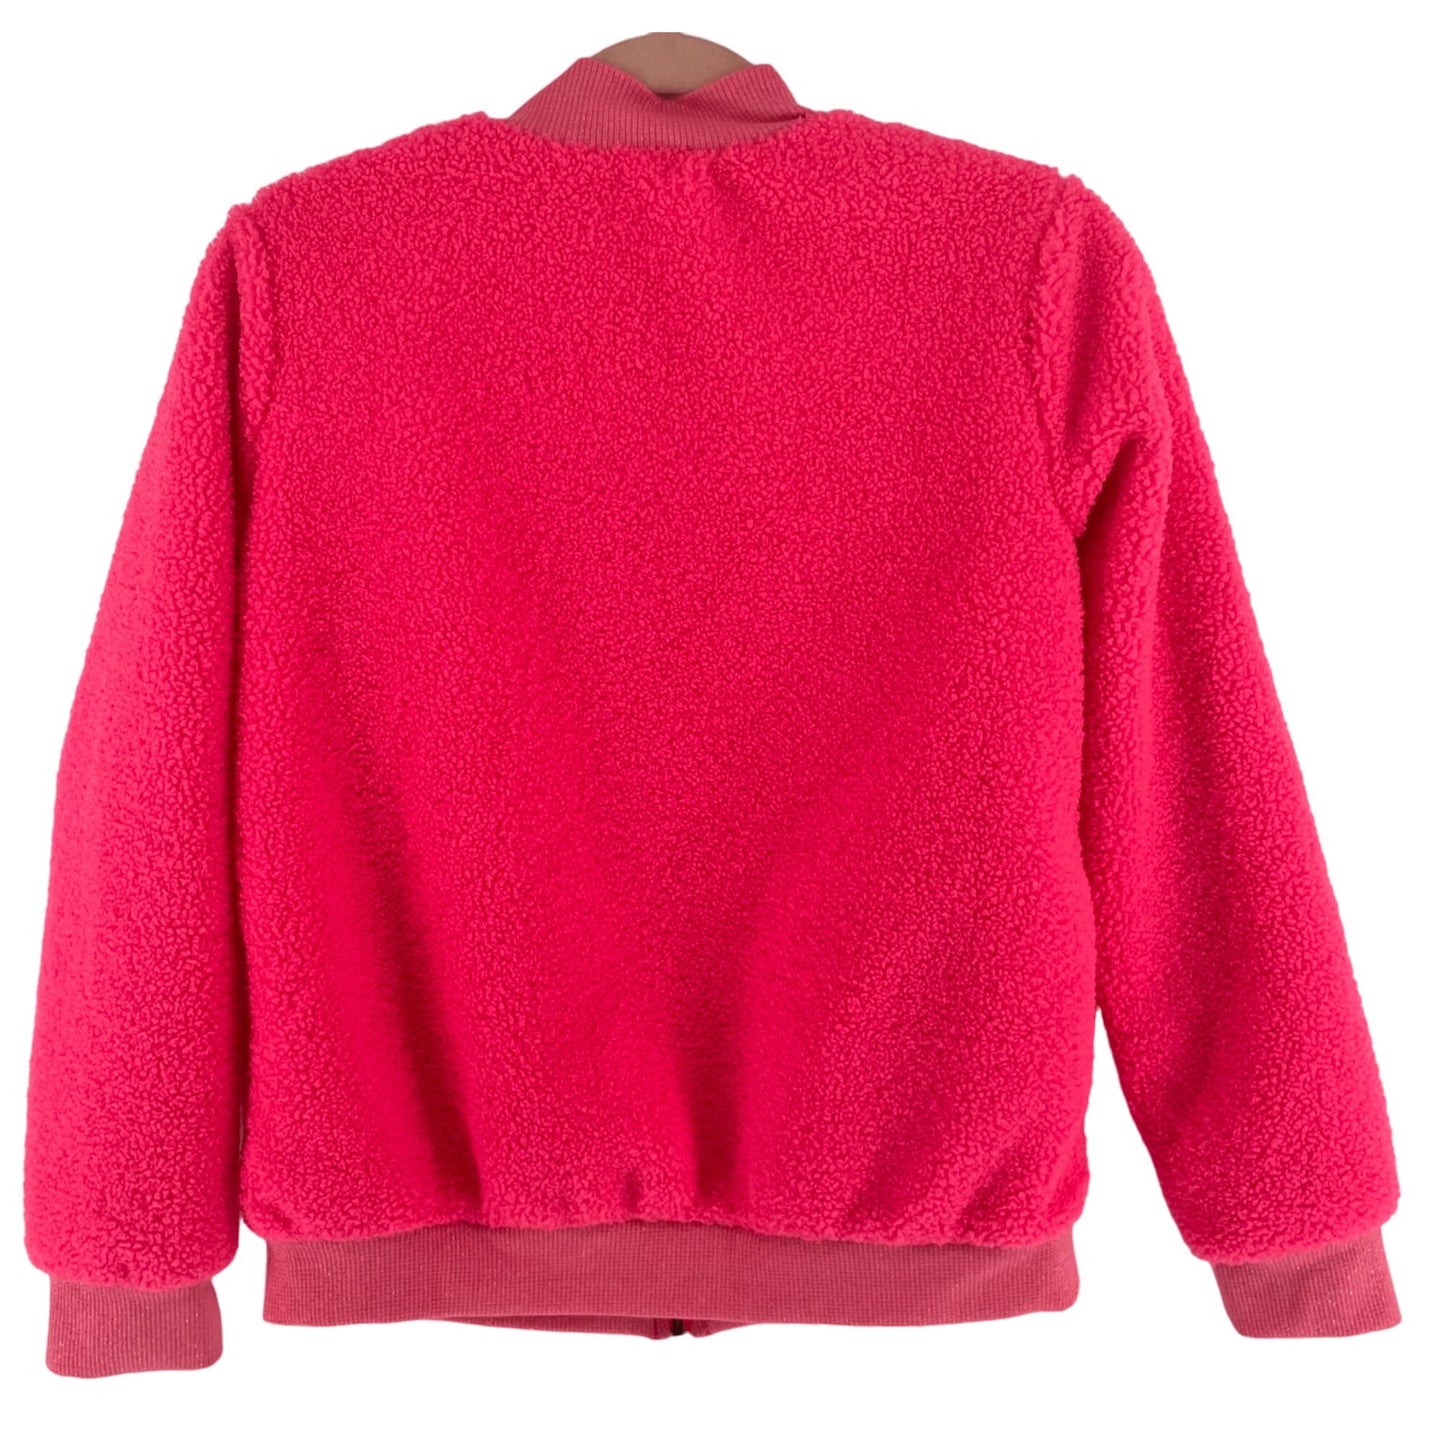 Cat & Jack Girl's Size XL (14/16) Hot Pink Teddy Fleece Zip-Up Jacket